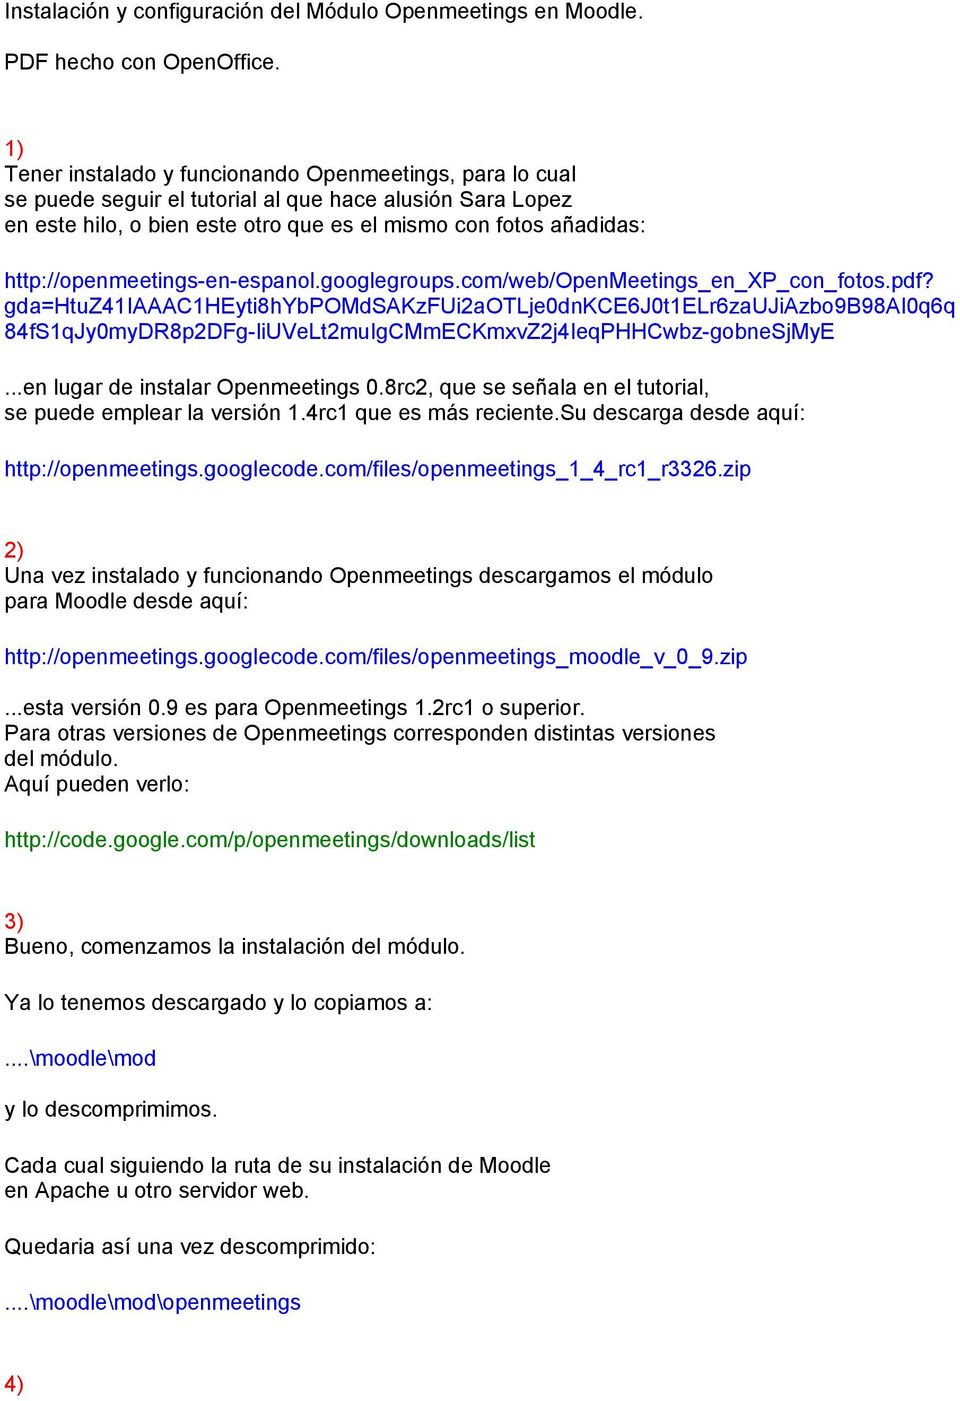 http://openmeetings-en-espanol.googlegroups.com/web/openmeetings_en_xp_con_fotos.pdf?